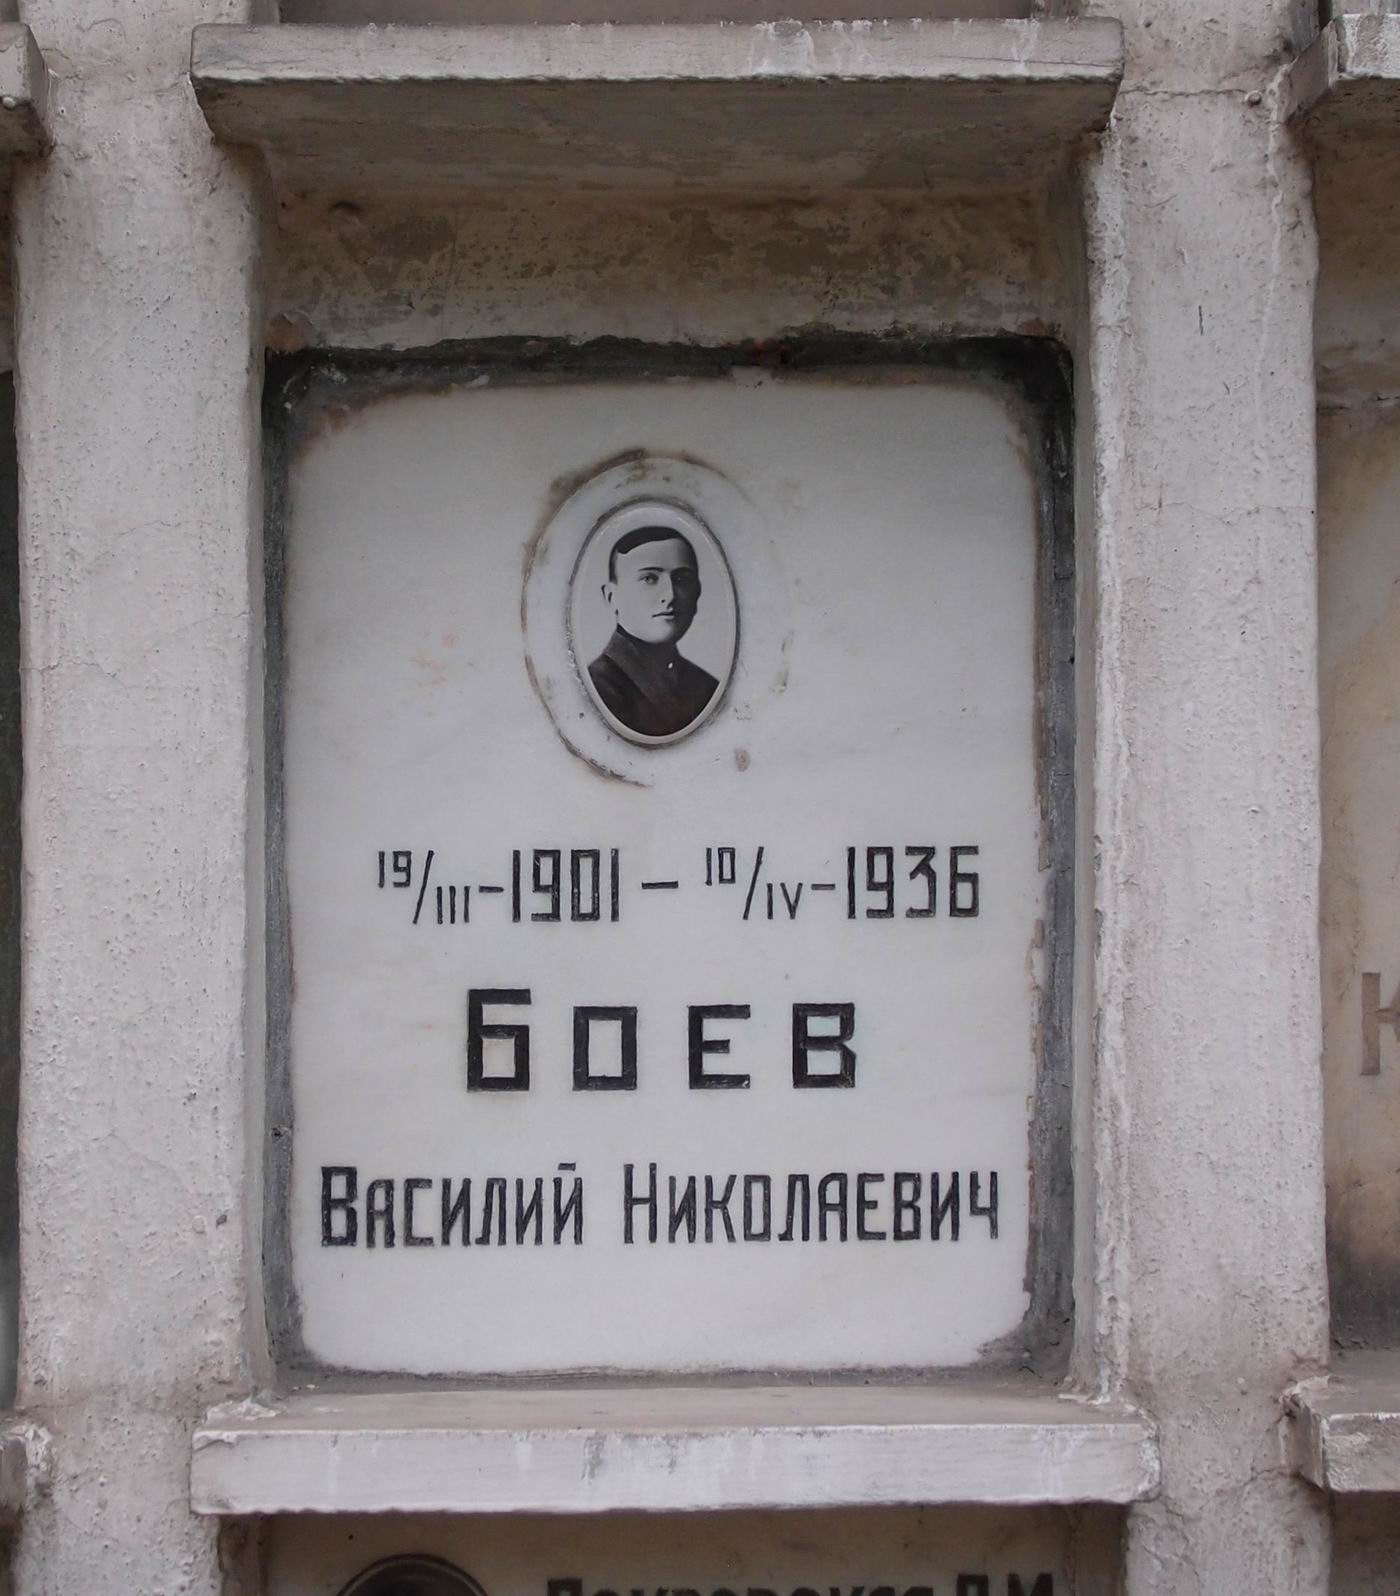 Плита на нише Боева В.Н. (1901-1936), на Новодевичьем кладбище (колумбарий [7]-5-2).